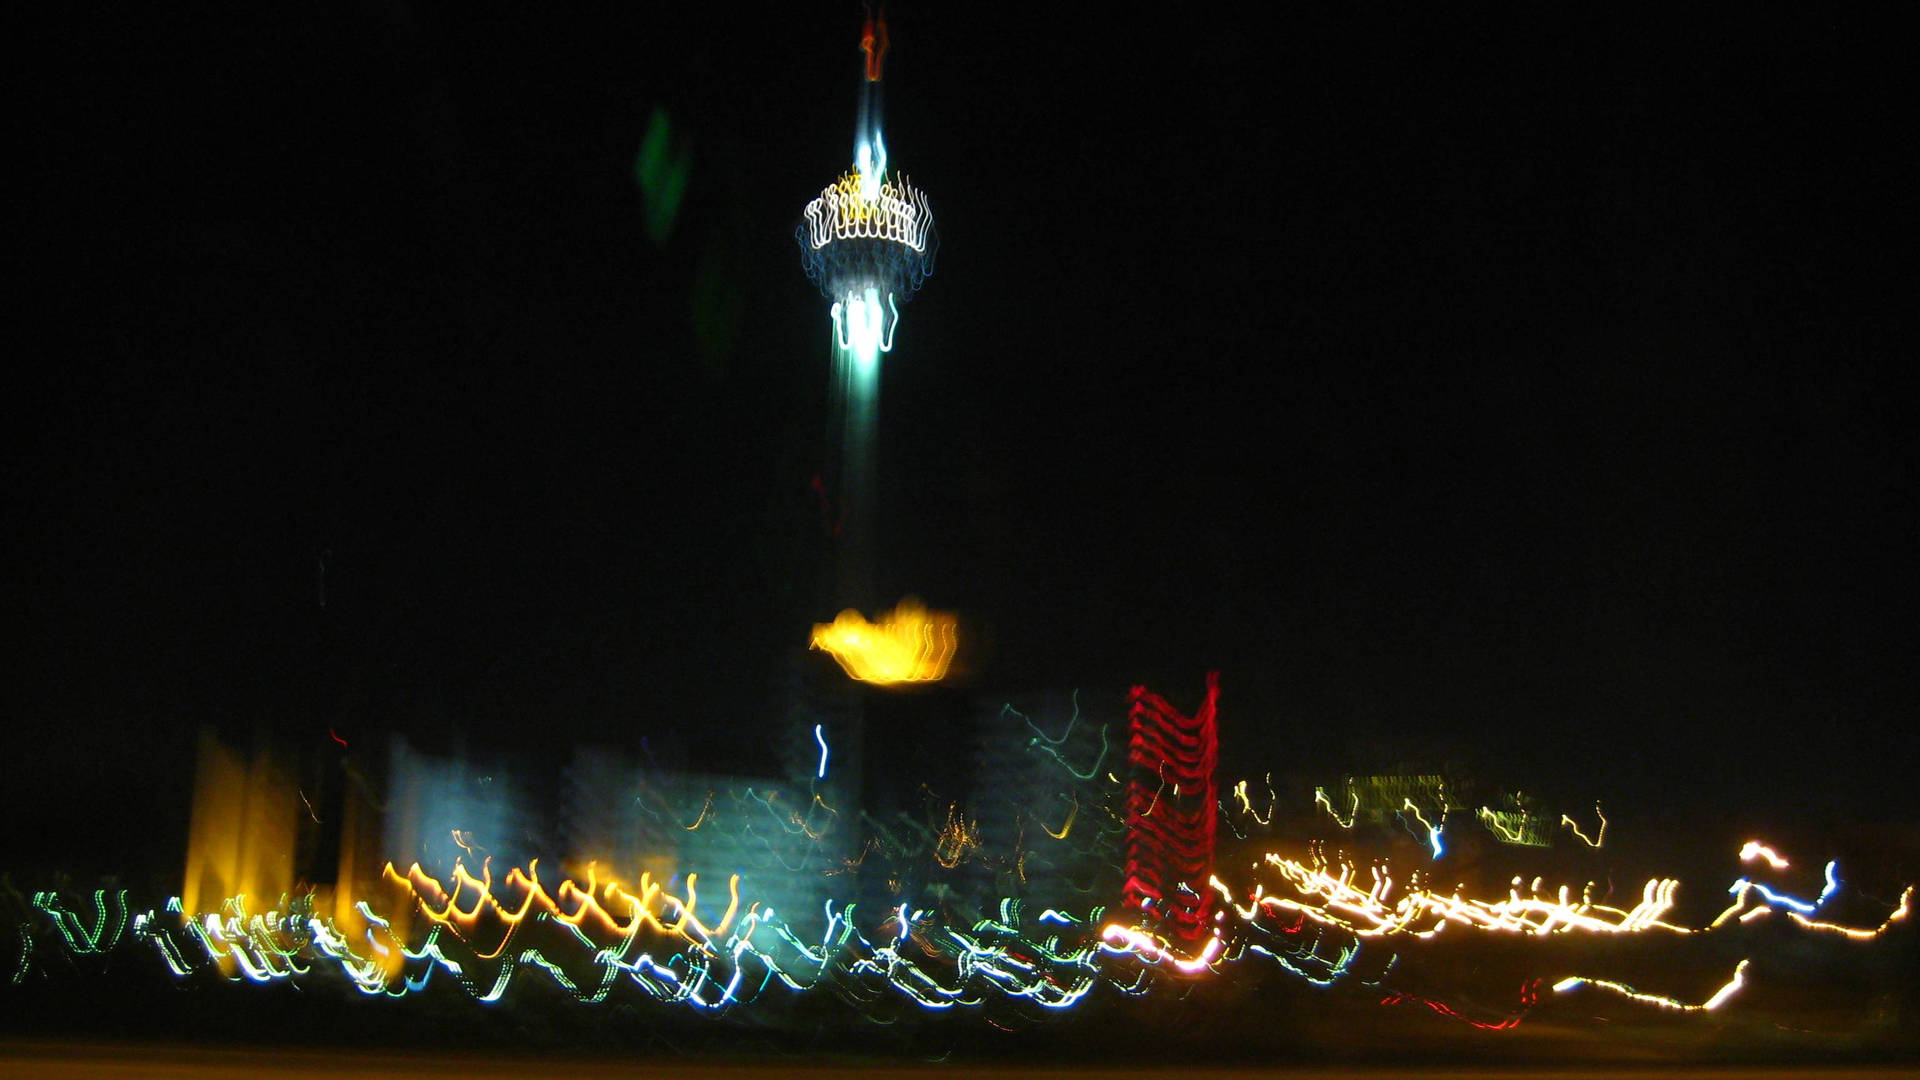 Tehran Blurred Lights Background